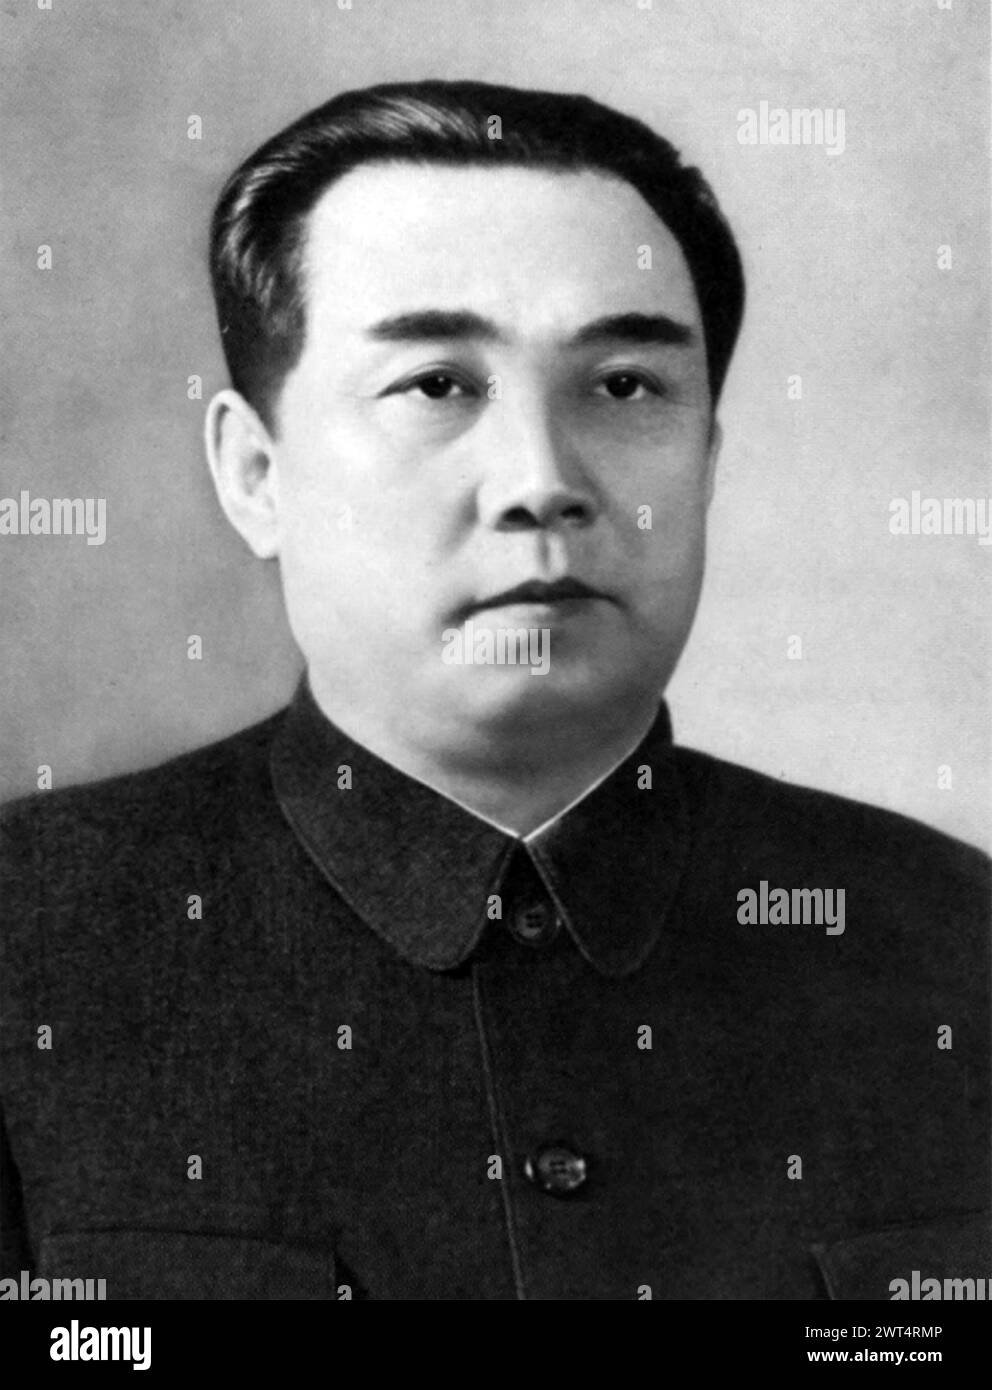 KIM II SUNG (§9§2-1994) fondatore della Corea del Nord, intorno al 1965 Foto Stock